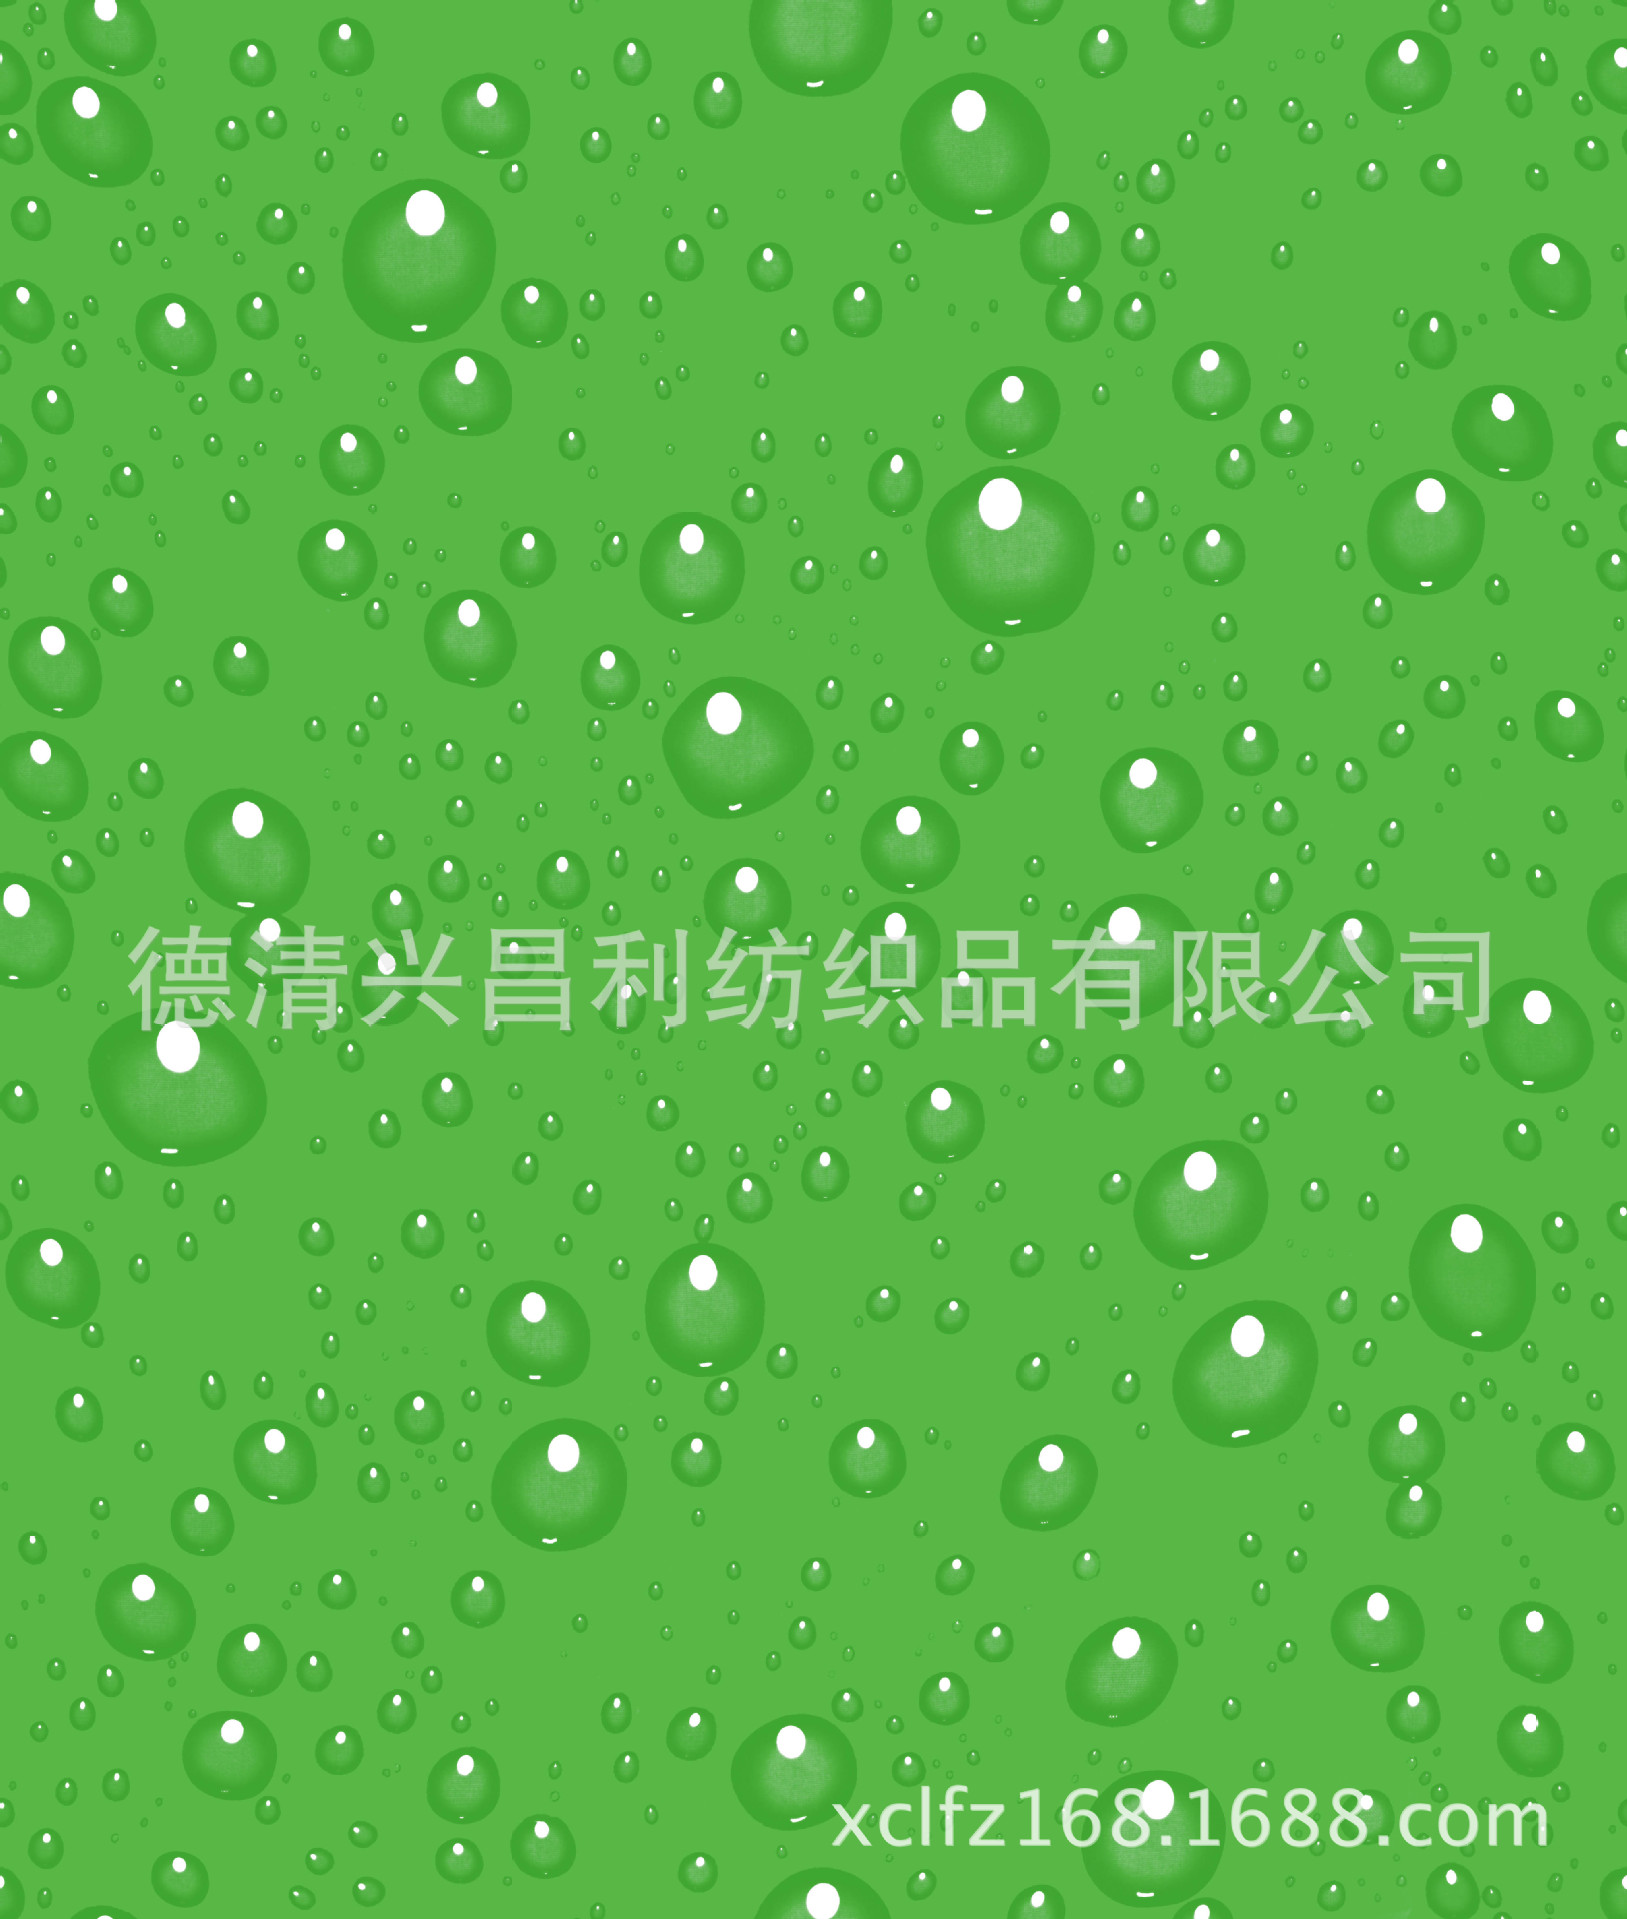 綠色水滴